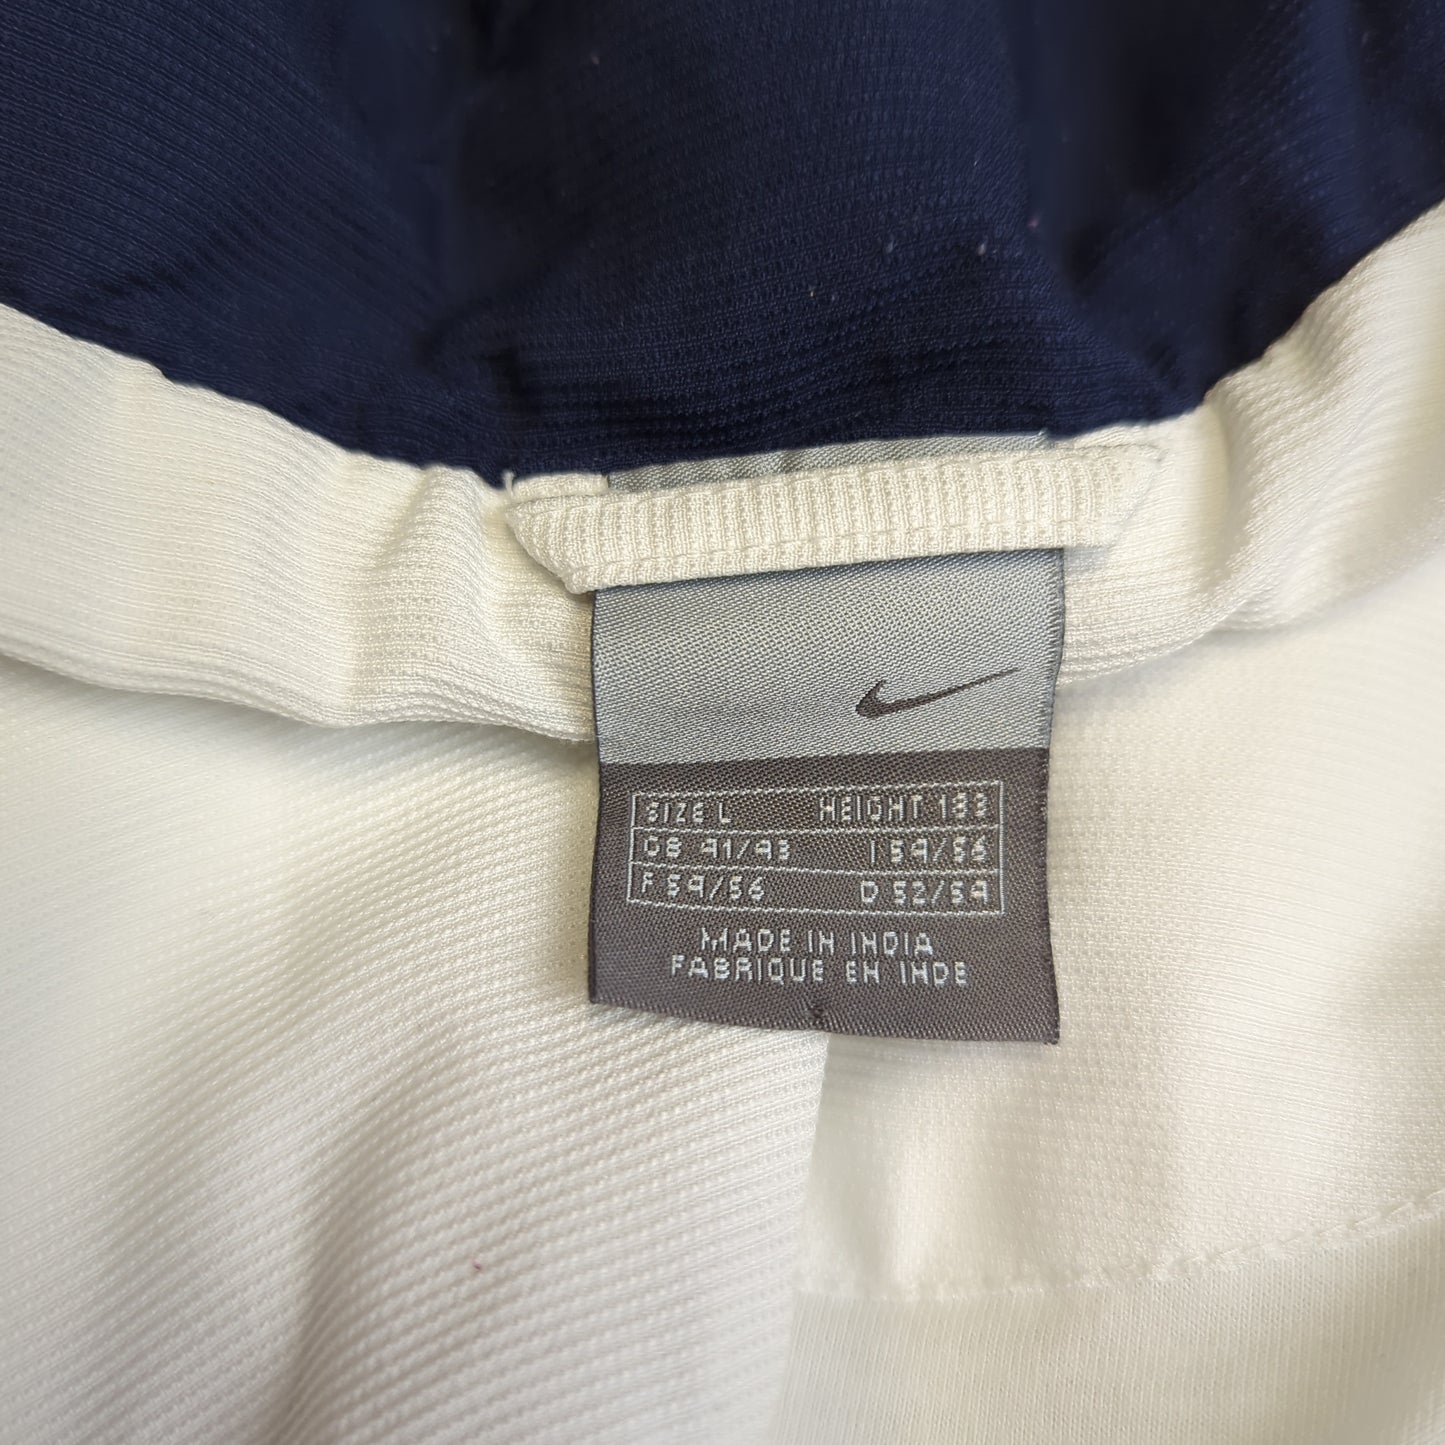 Nike Vintage White Track Jacket Men Size Large